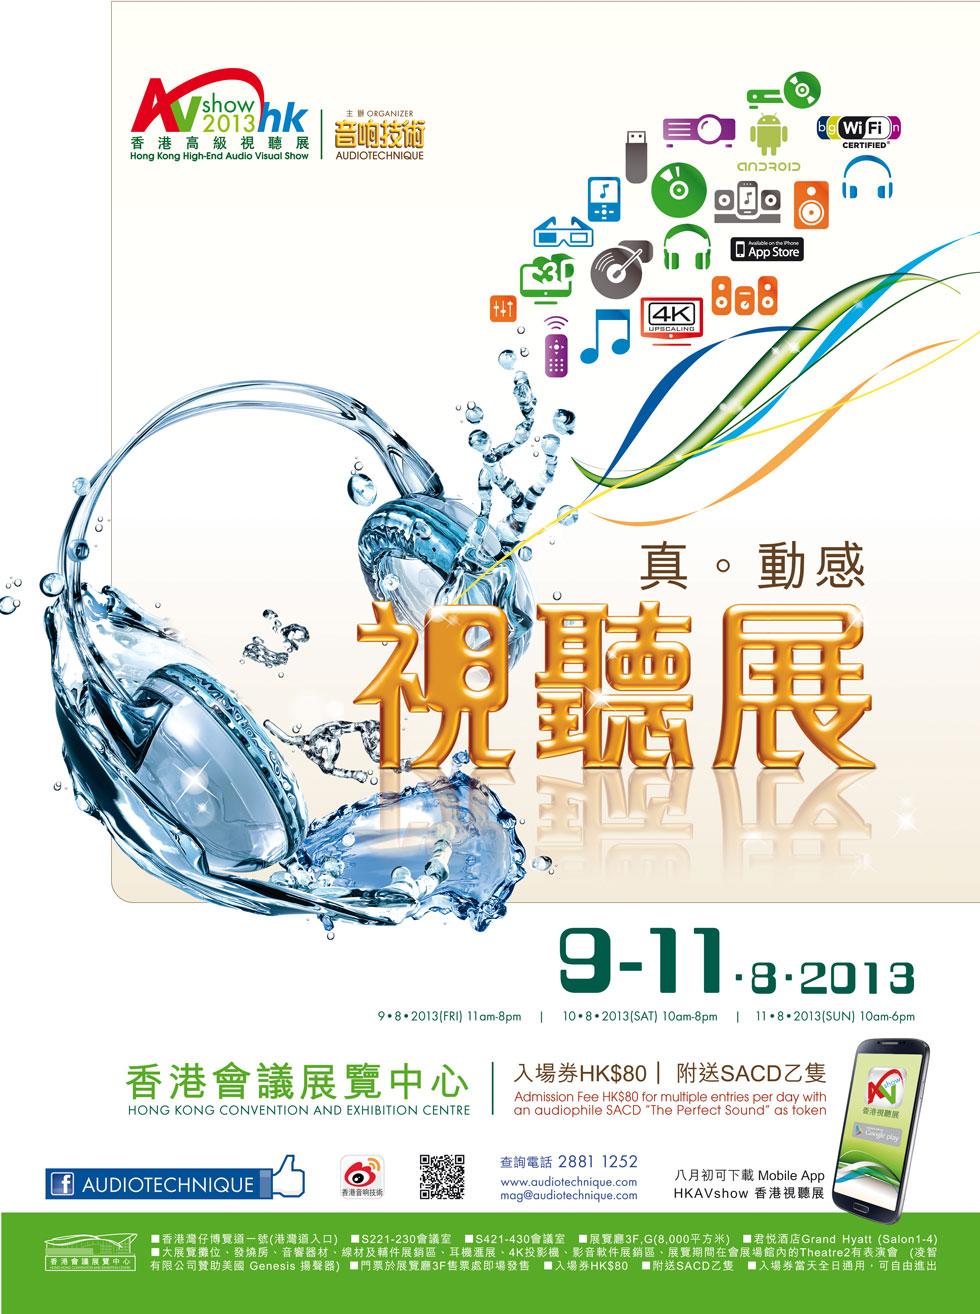 2013 香港高級視聽展 8 月 9-11 日香港會議展覽中心舉行